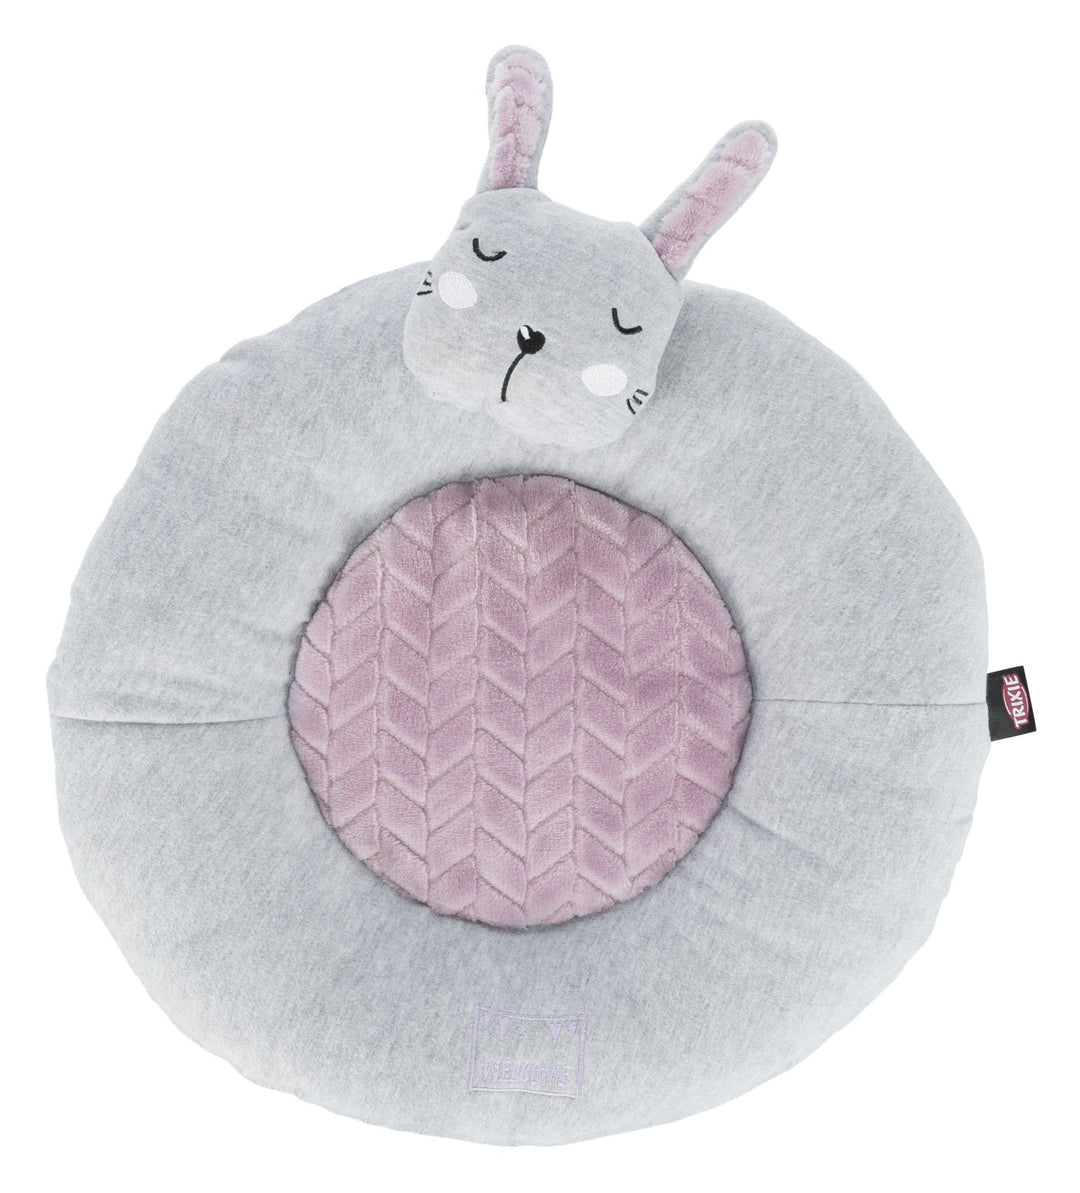 Junior lying mat rabbit, Diam ÷ 40 cm, light grey/light lilac